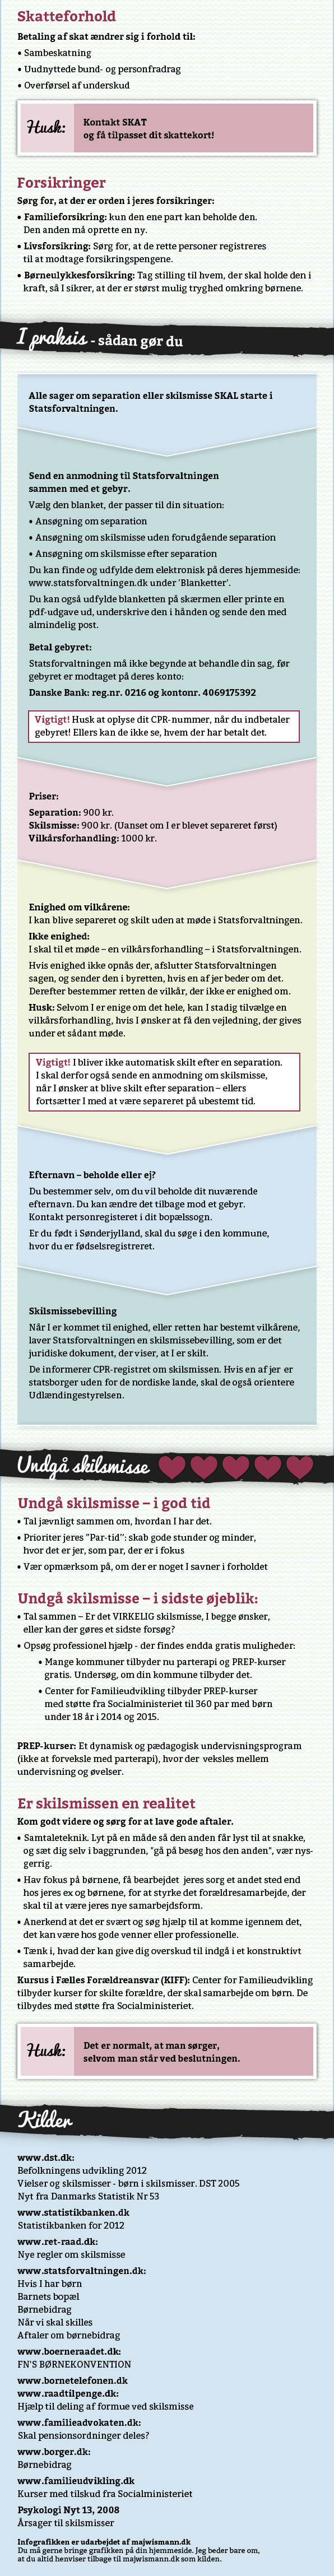 Danske Skilsmisser Infografik